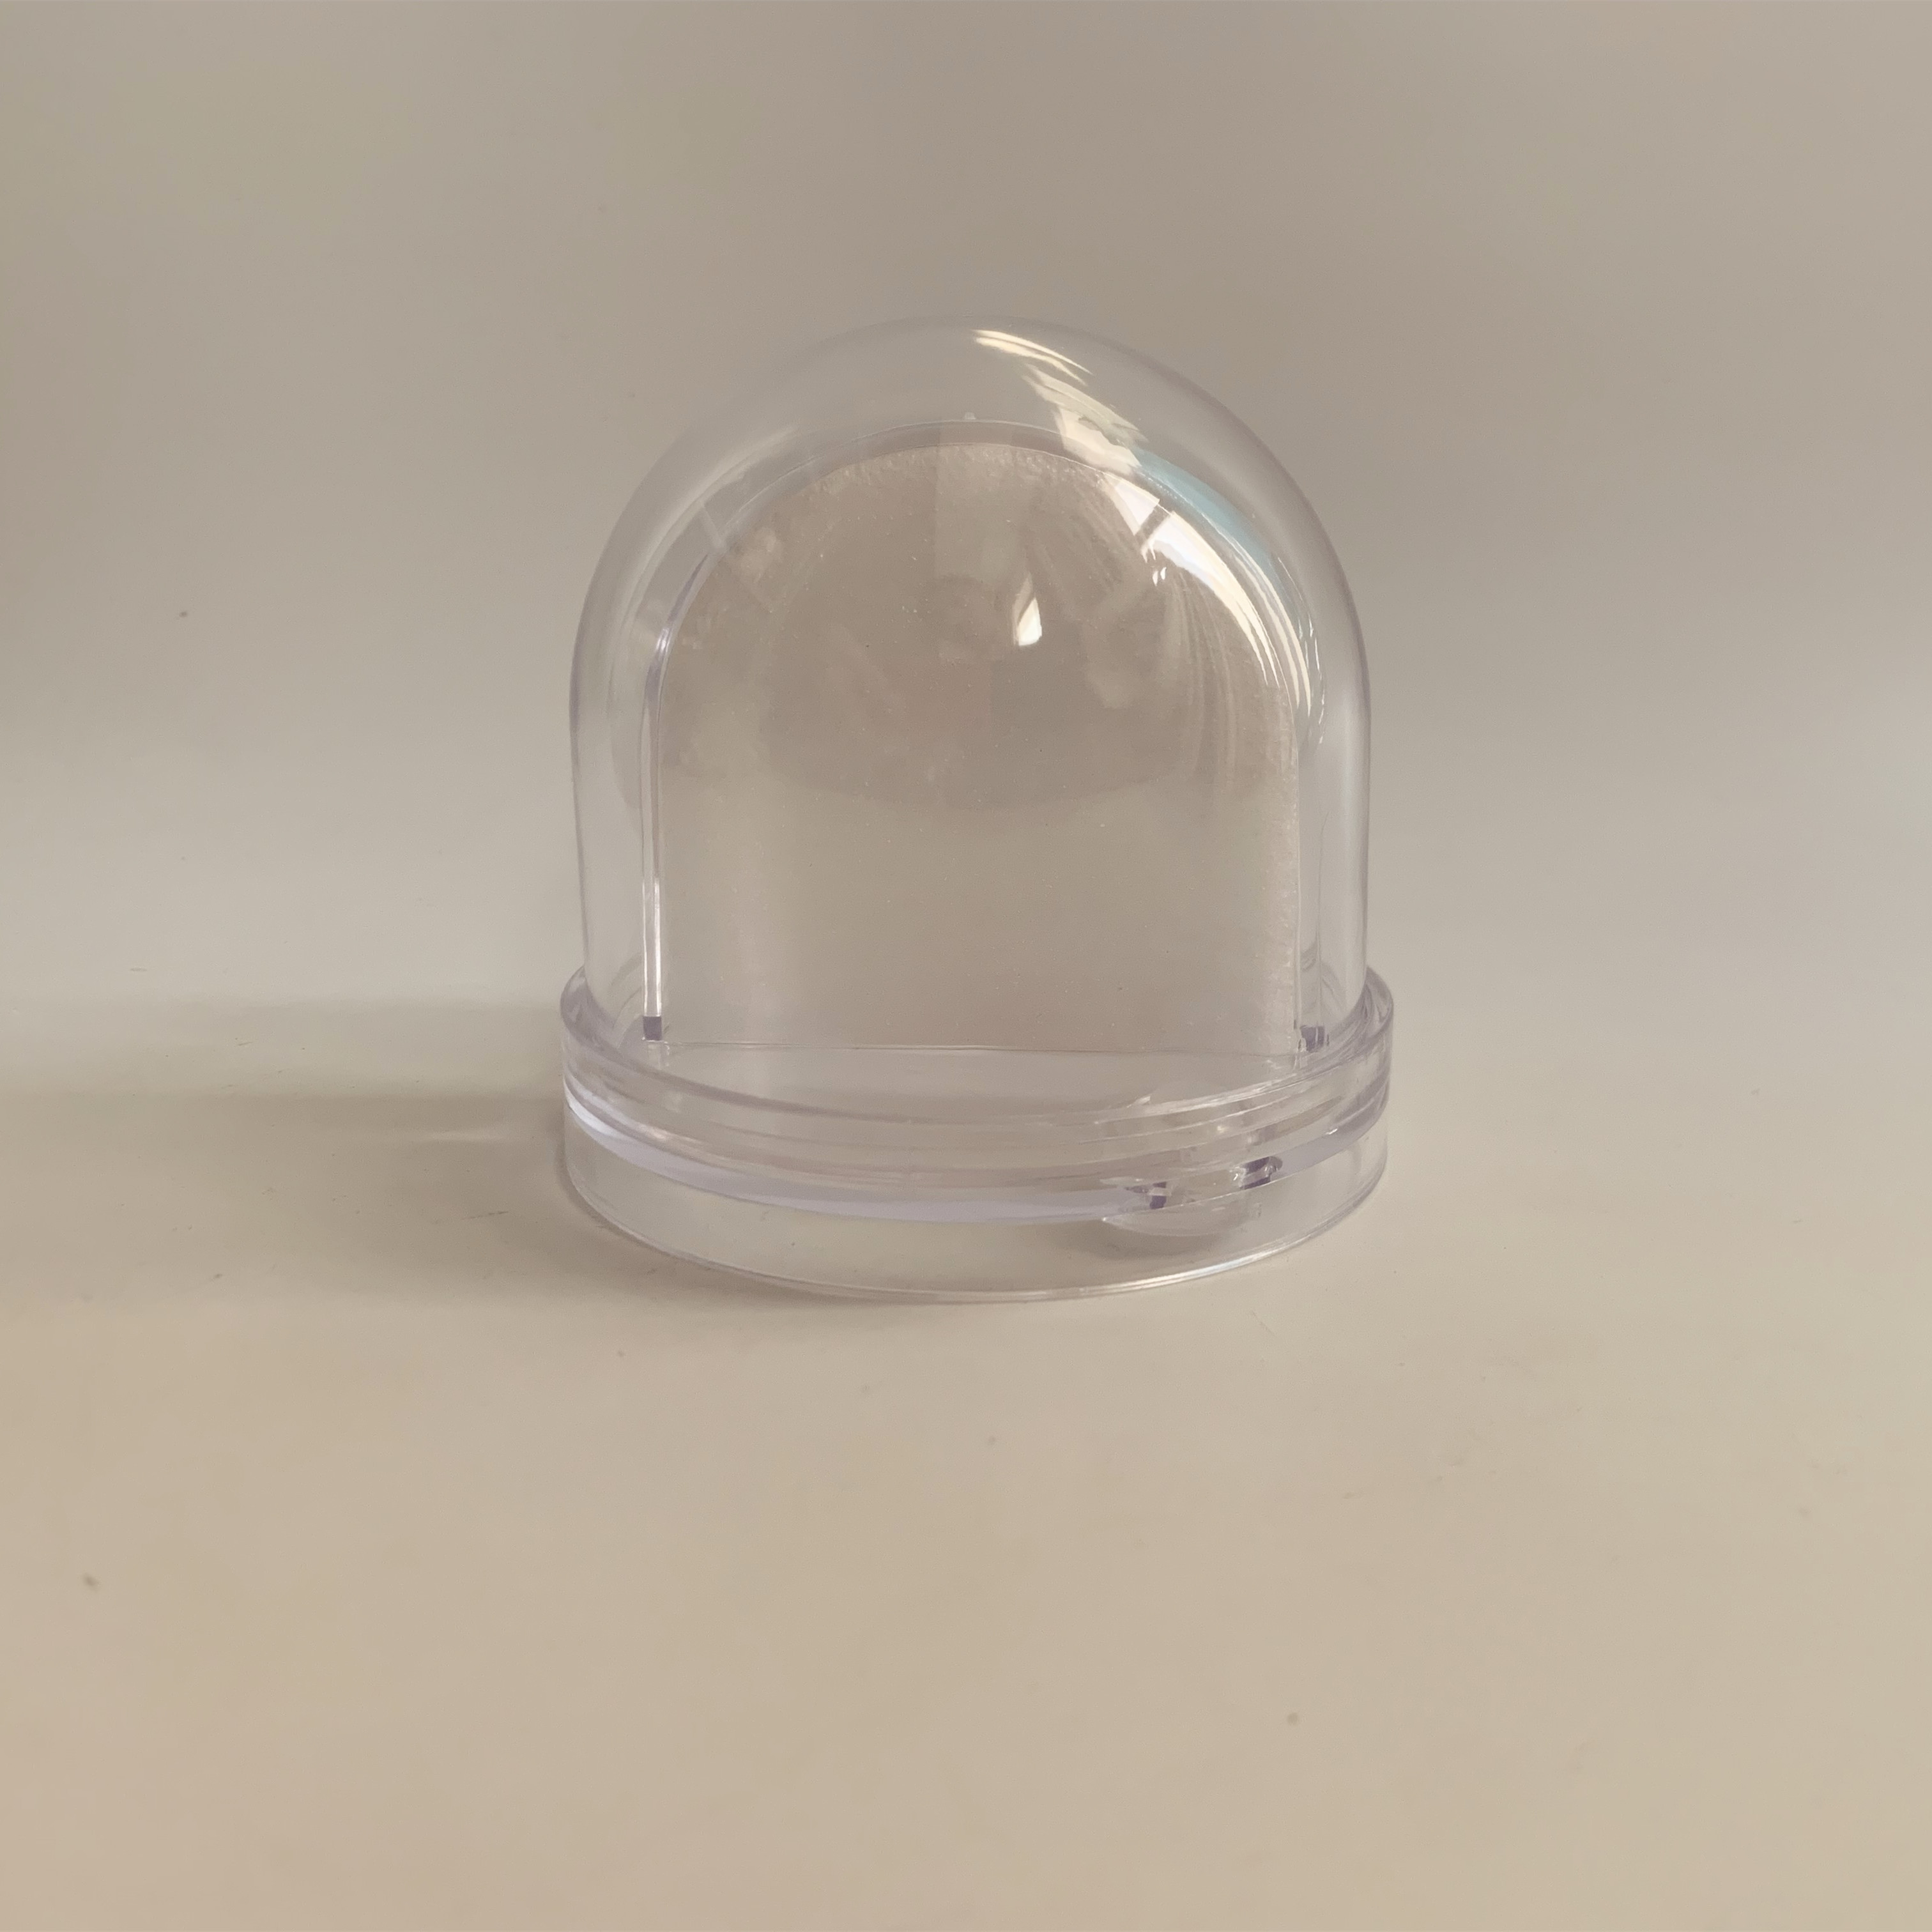 Globo de nieve de regalo de regalo de bricolaje personalizado, globo de nieve de plástico, foto de plástico Insertar globo de nieve sin agua y papel